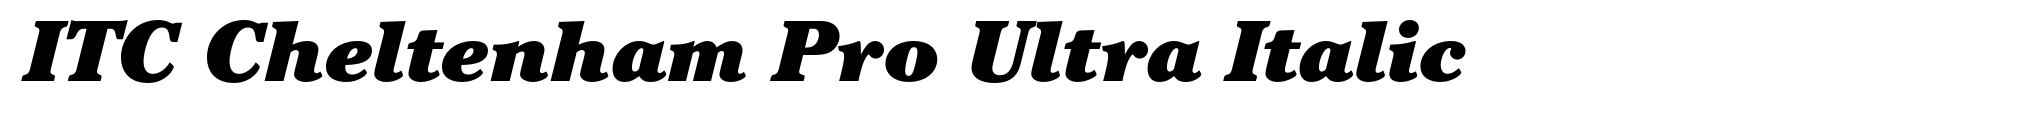 ITC Cheltenham Pro Ultra Italic image